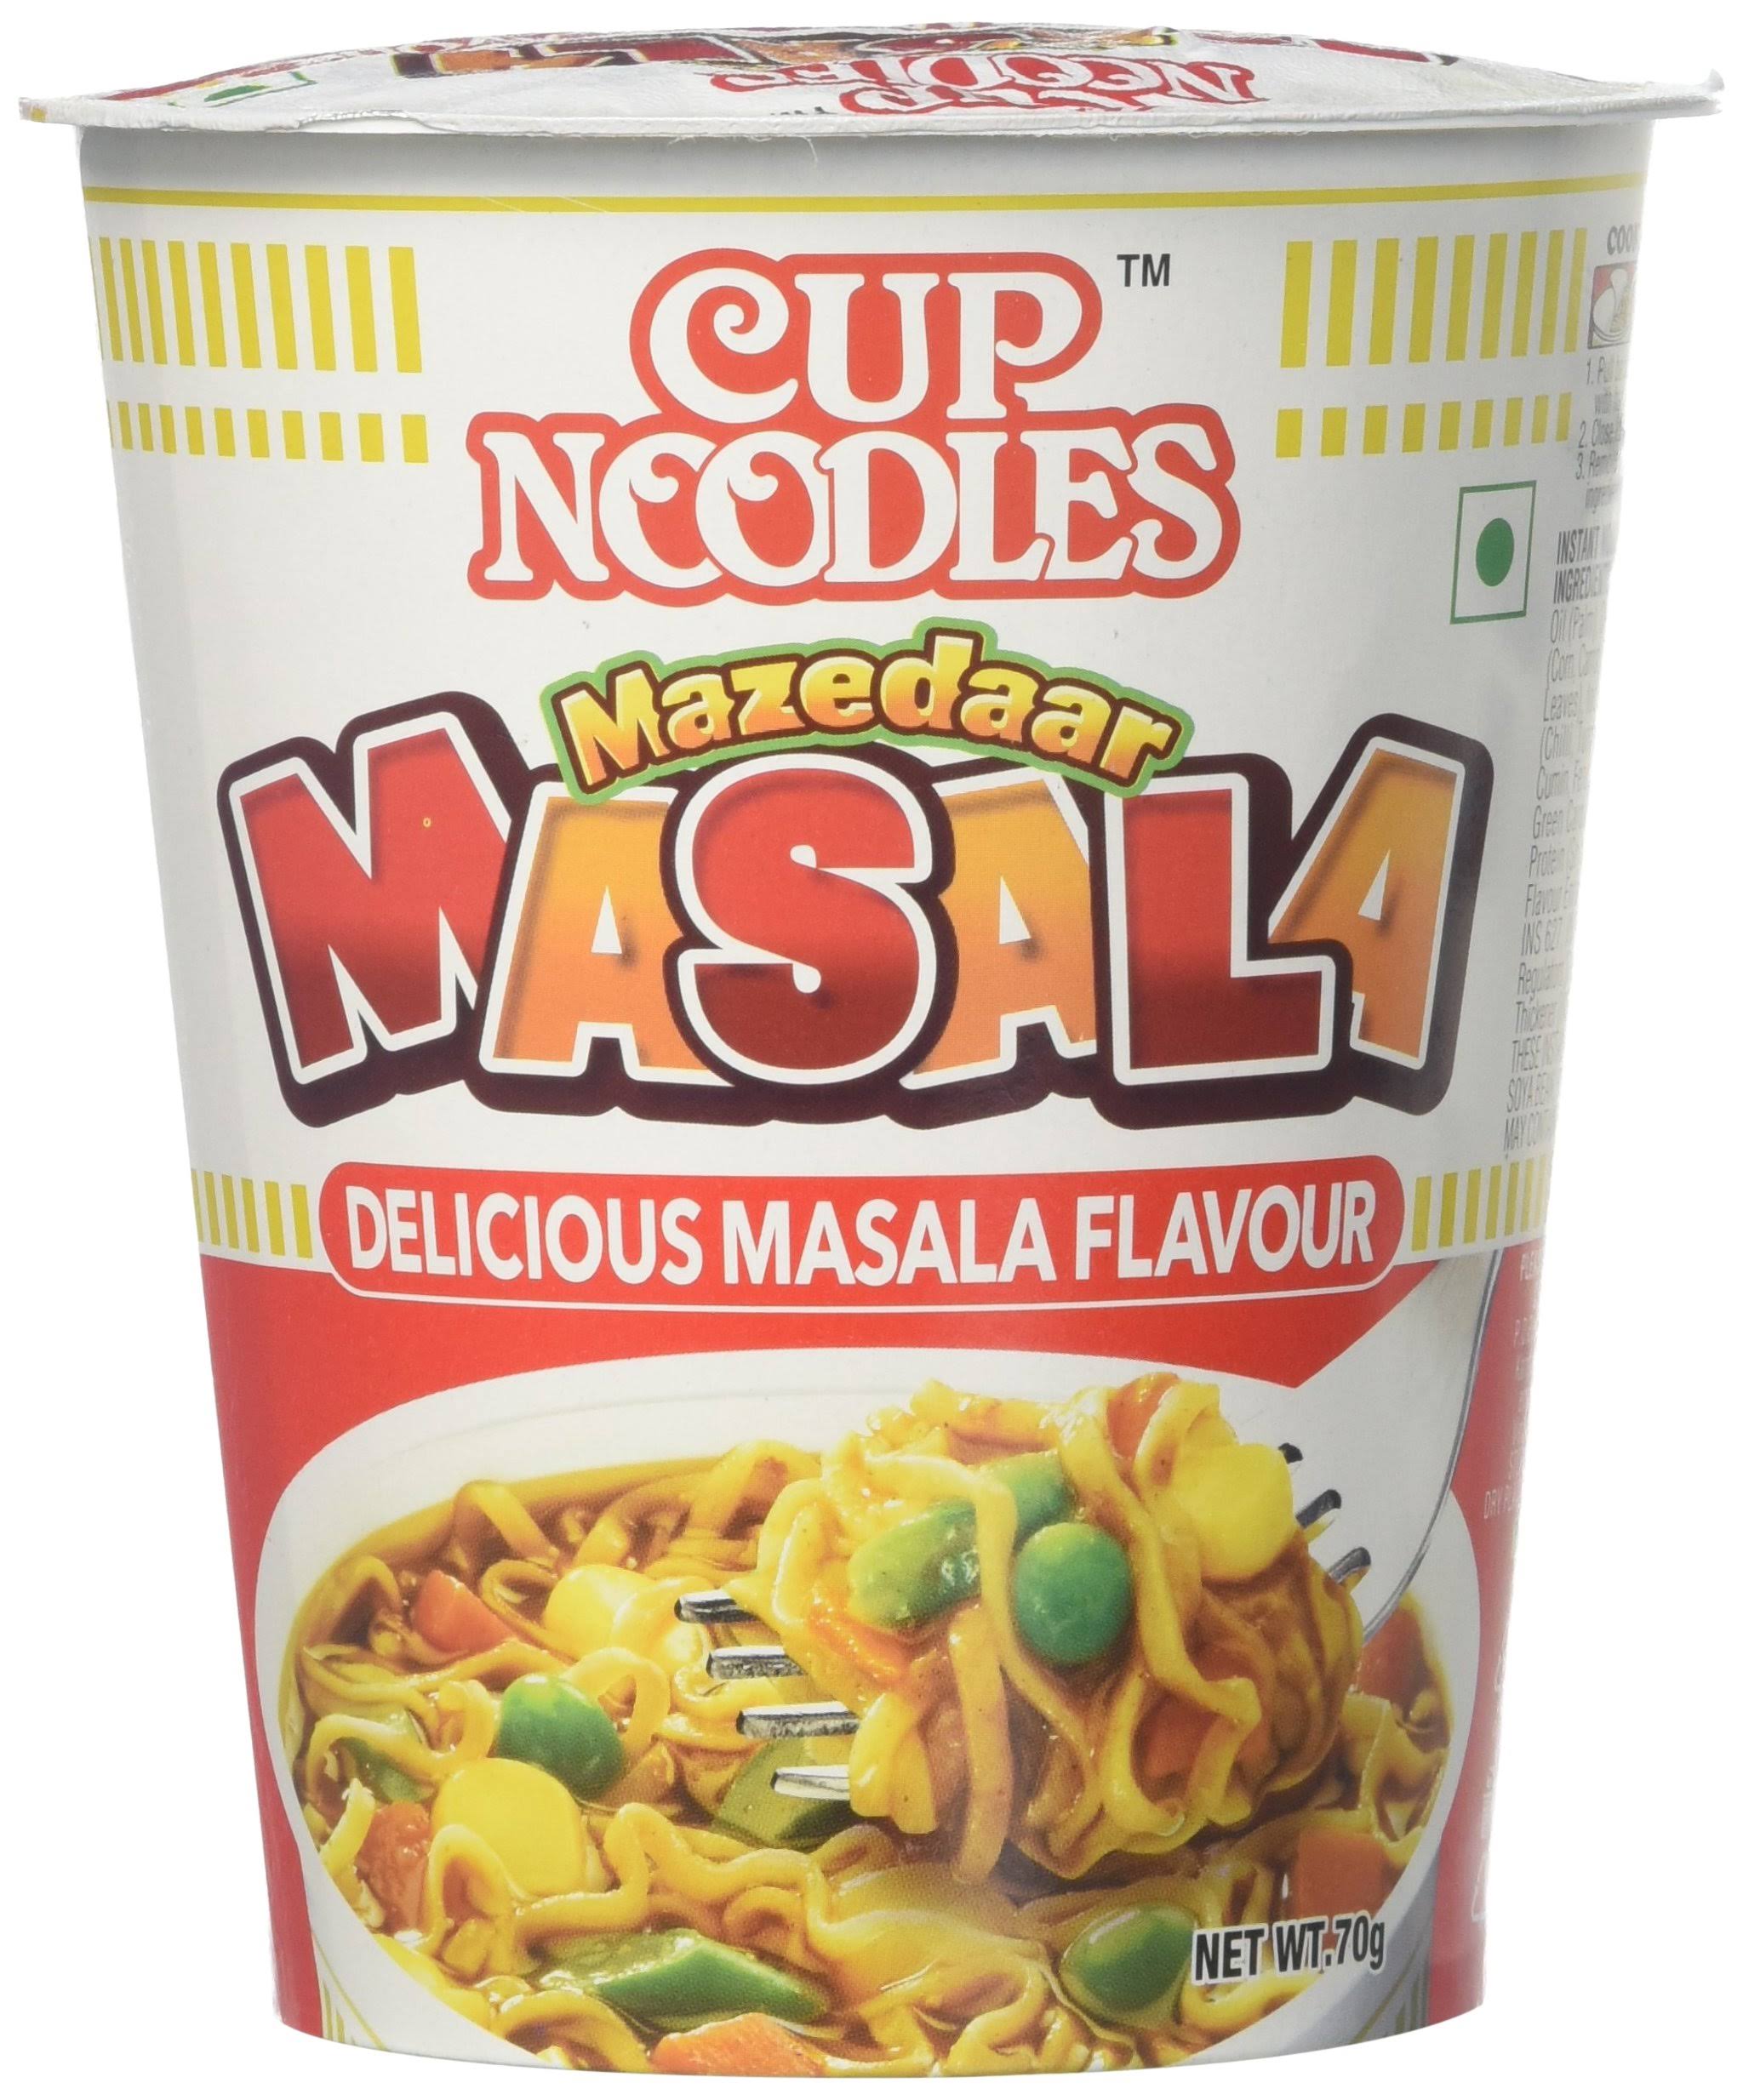 Cup Noodles Mazedaar Masala, 70g